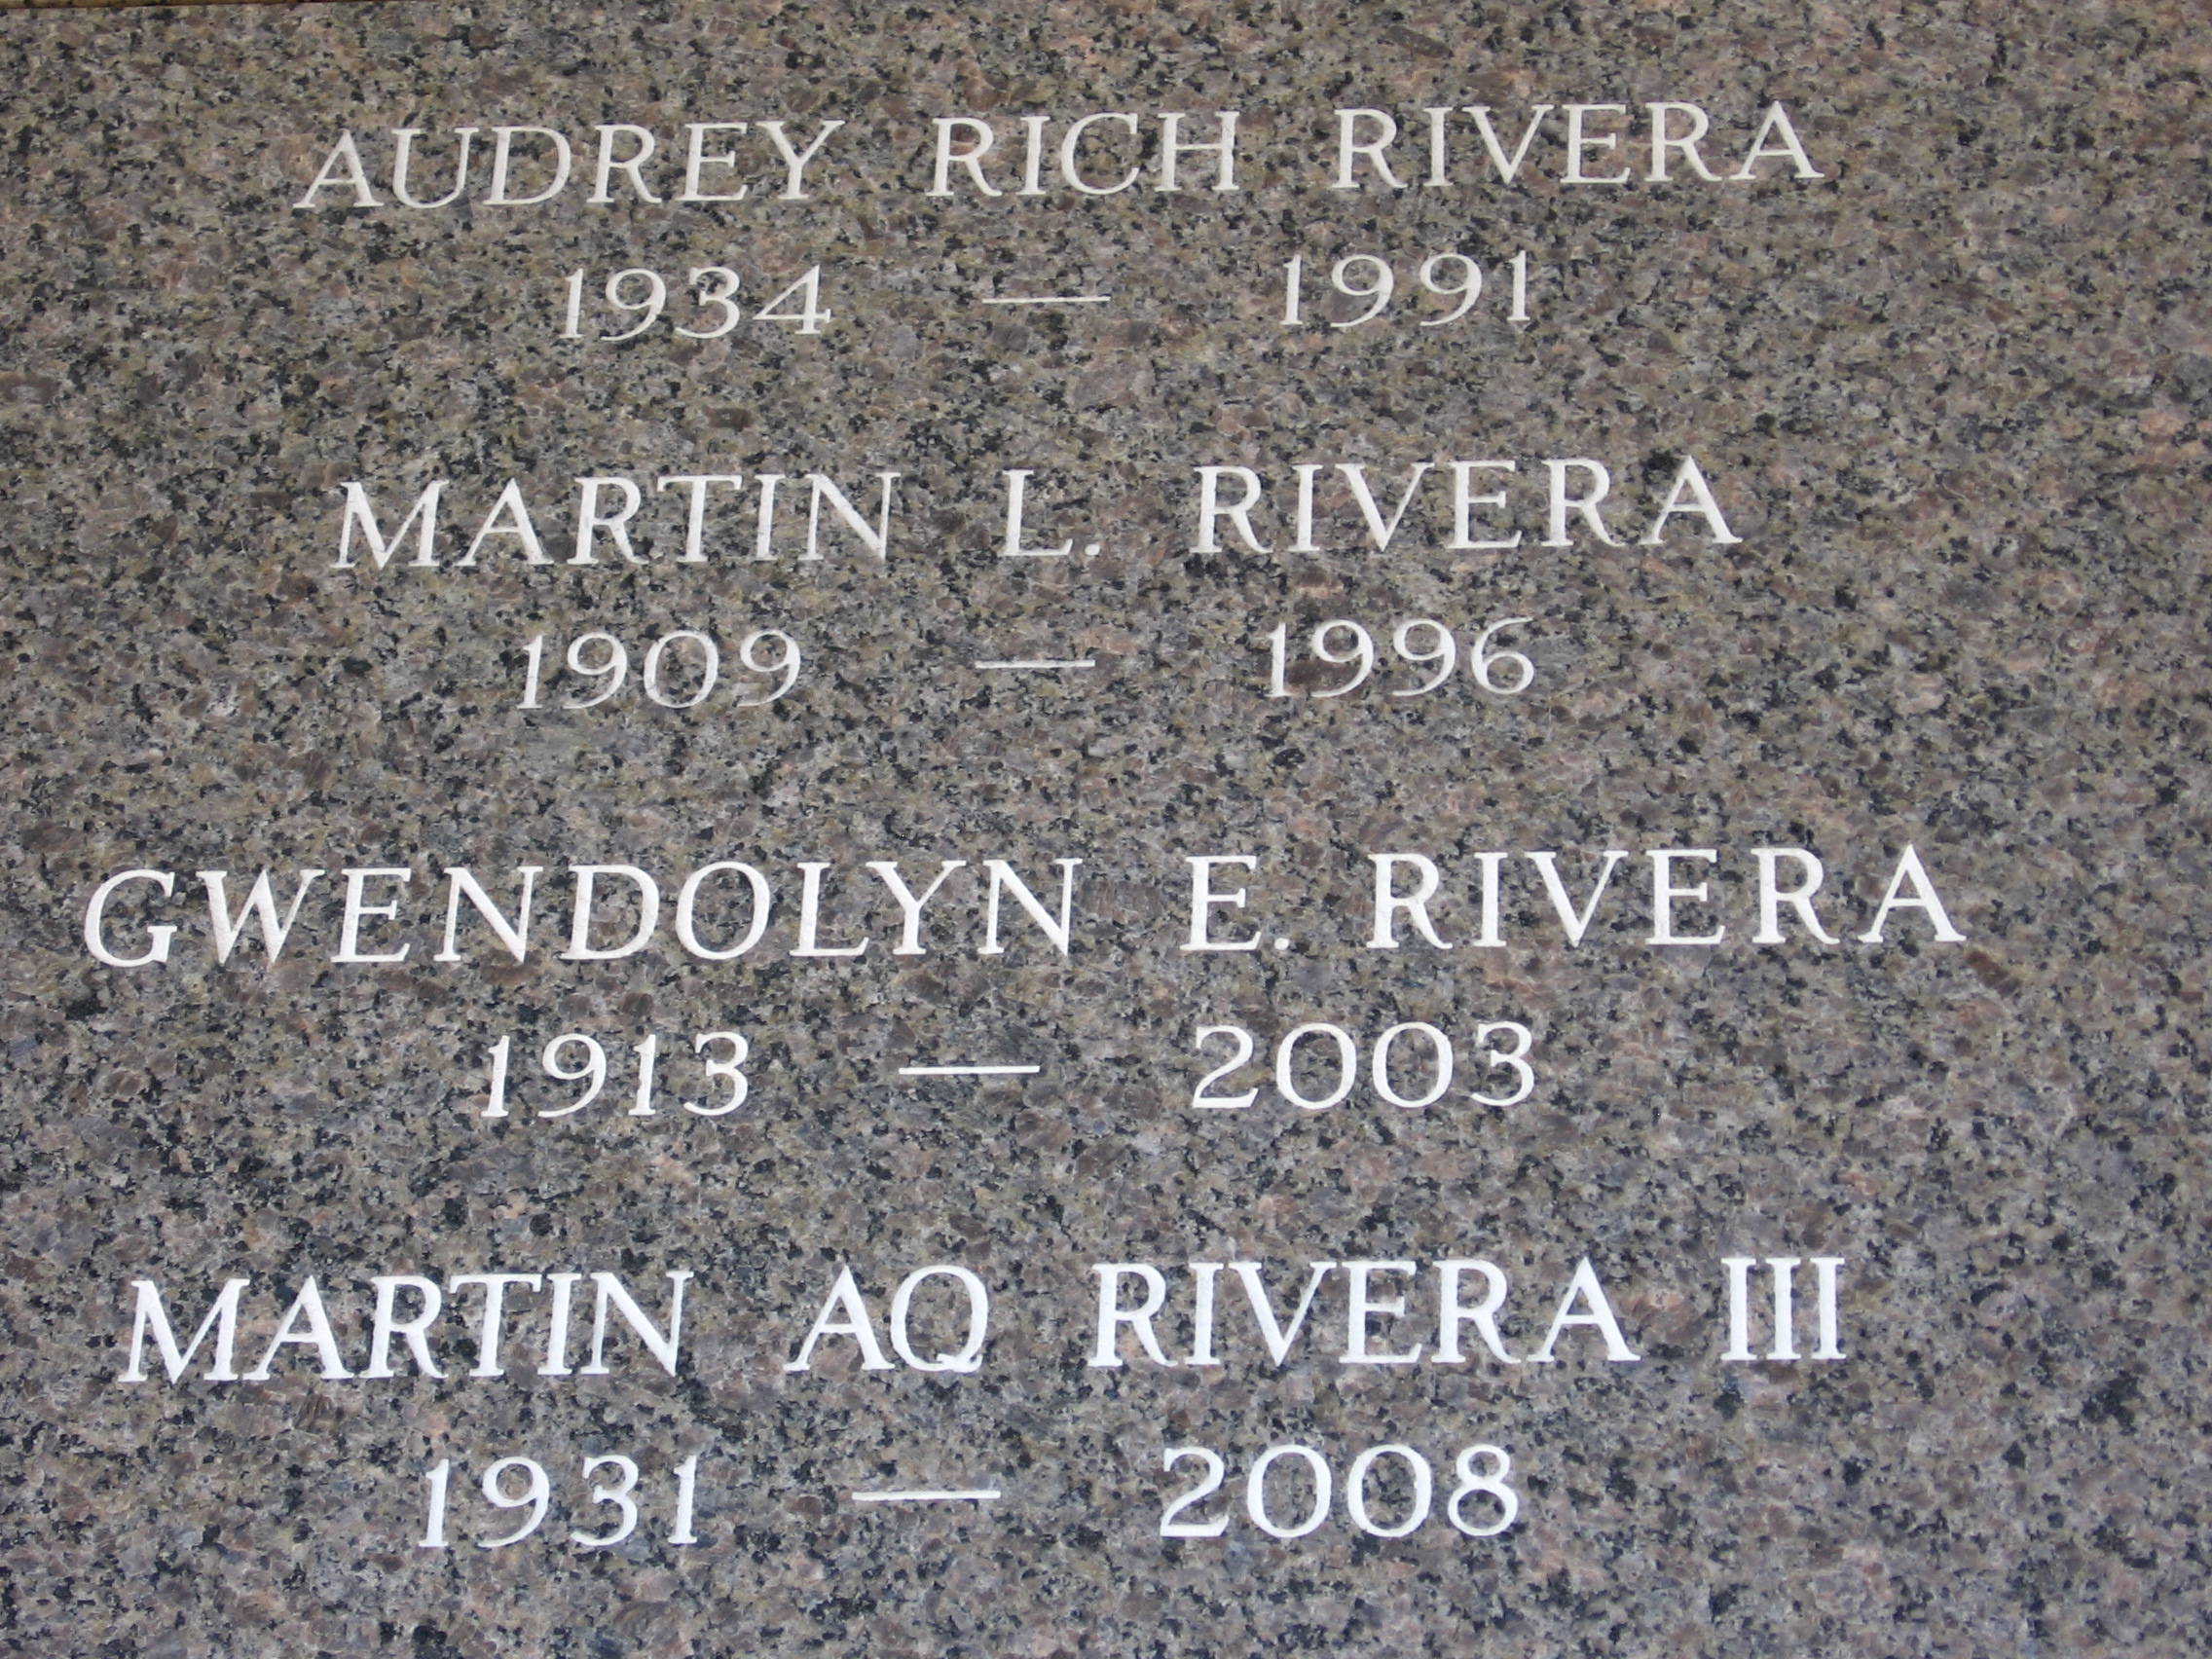 Martin Aq Rivera, III